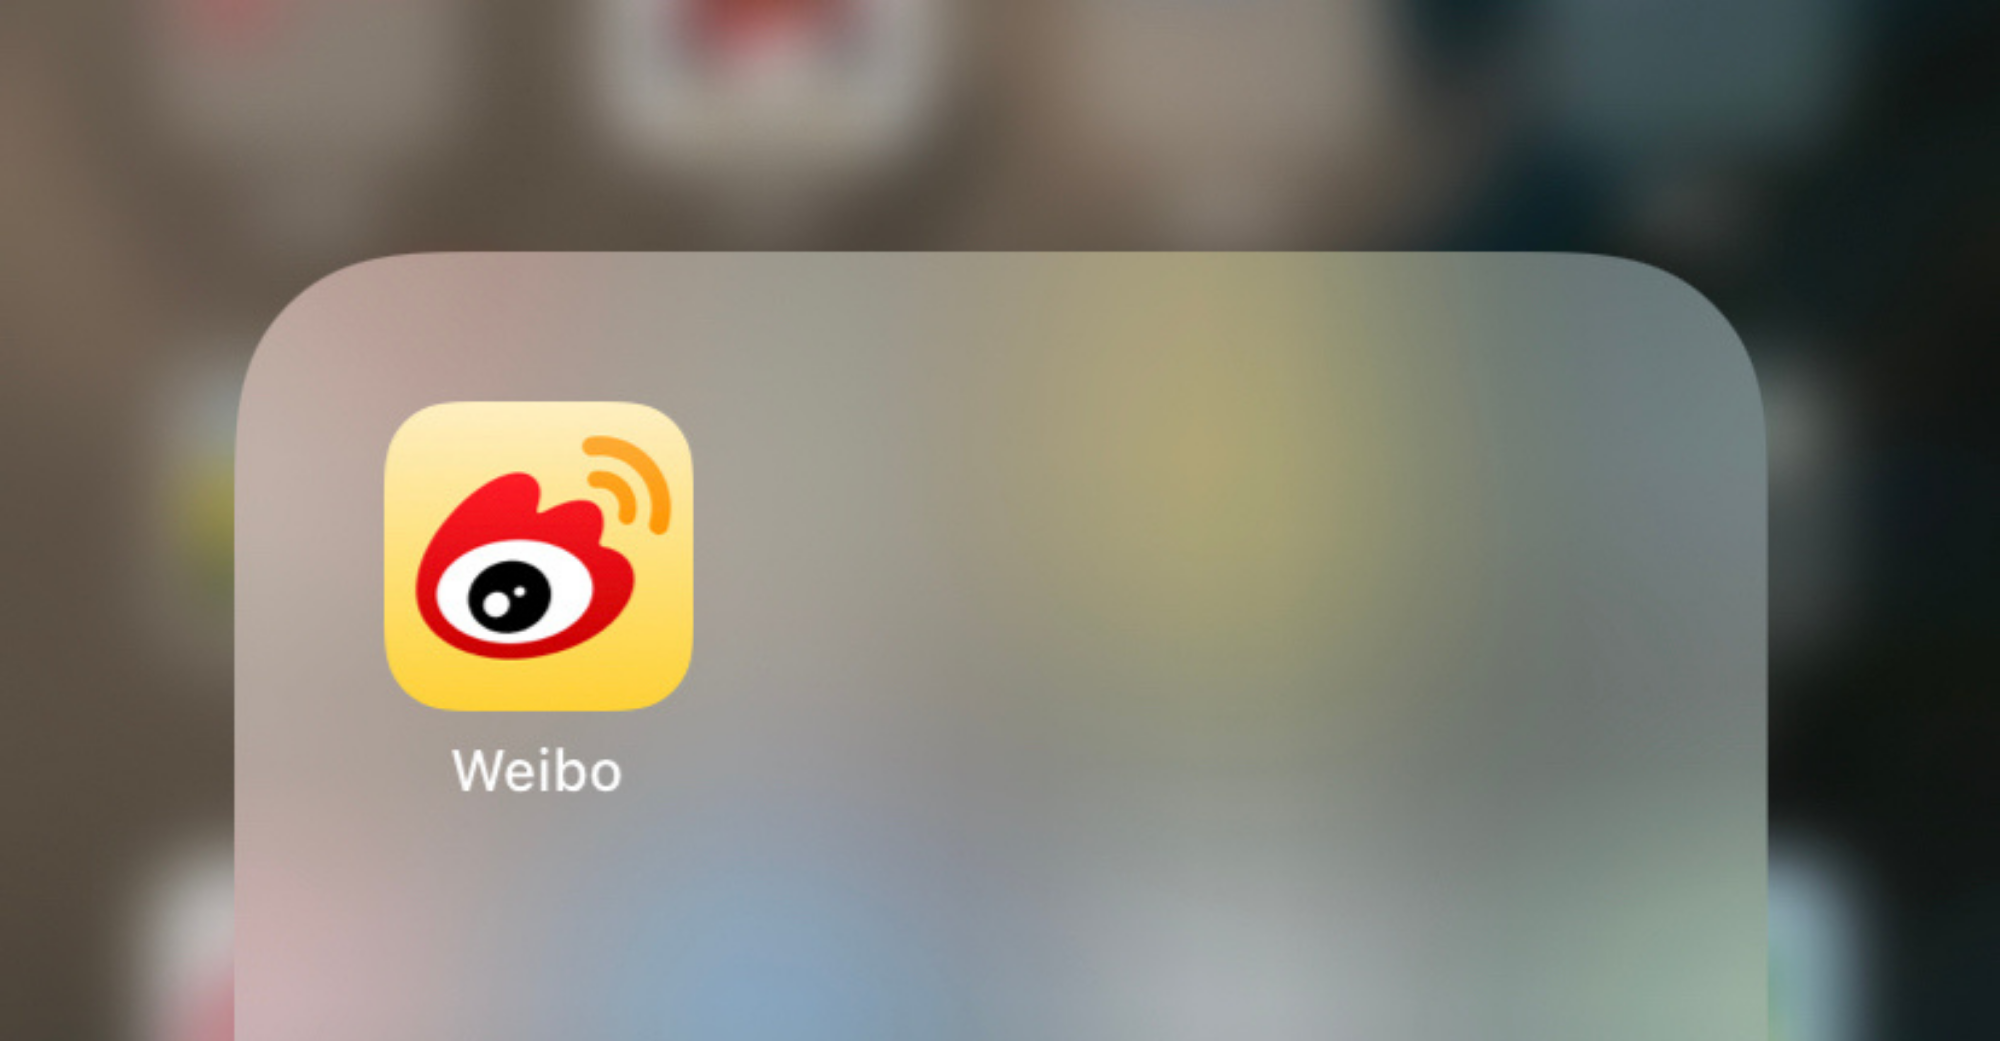 Weibo menawarkan 11 juta saham di seluruh dunia, tidak lebih daripada $49.75 sesaham